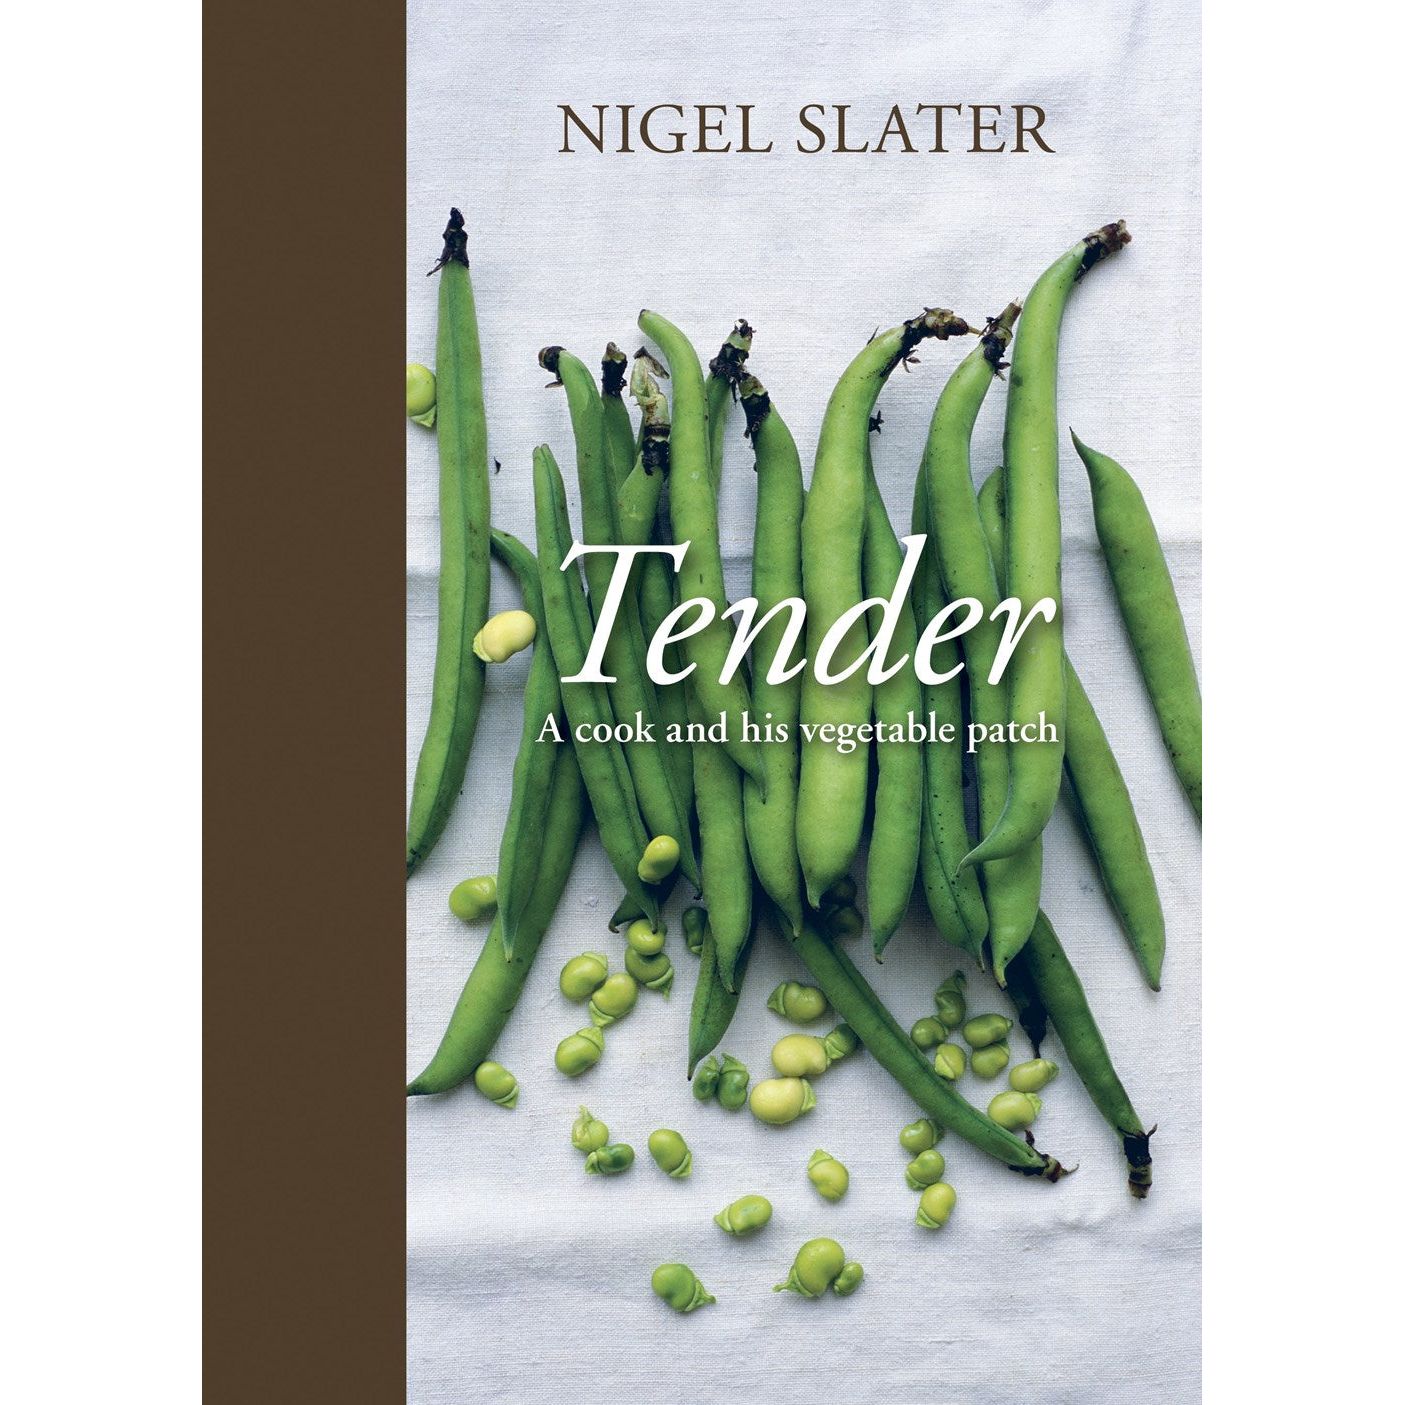 Tender (Nigel Slater)